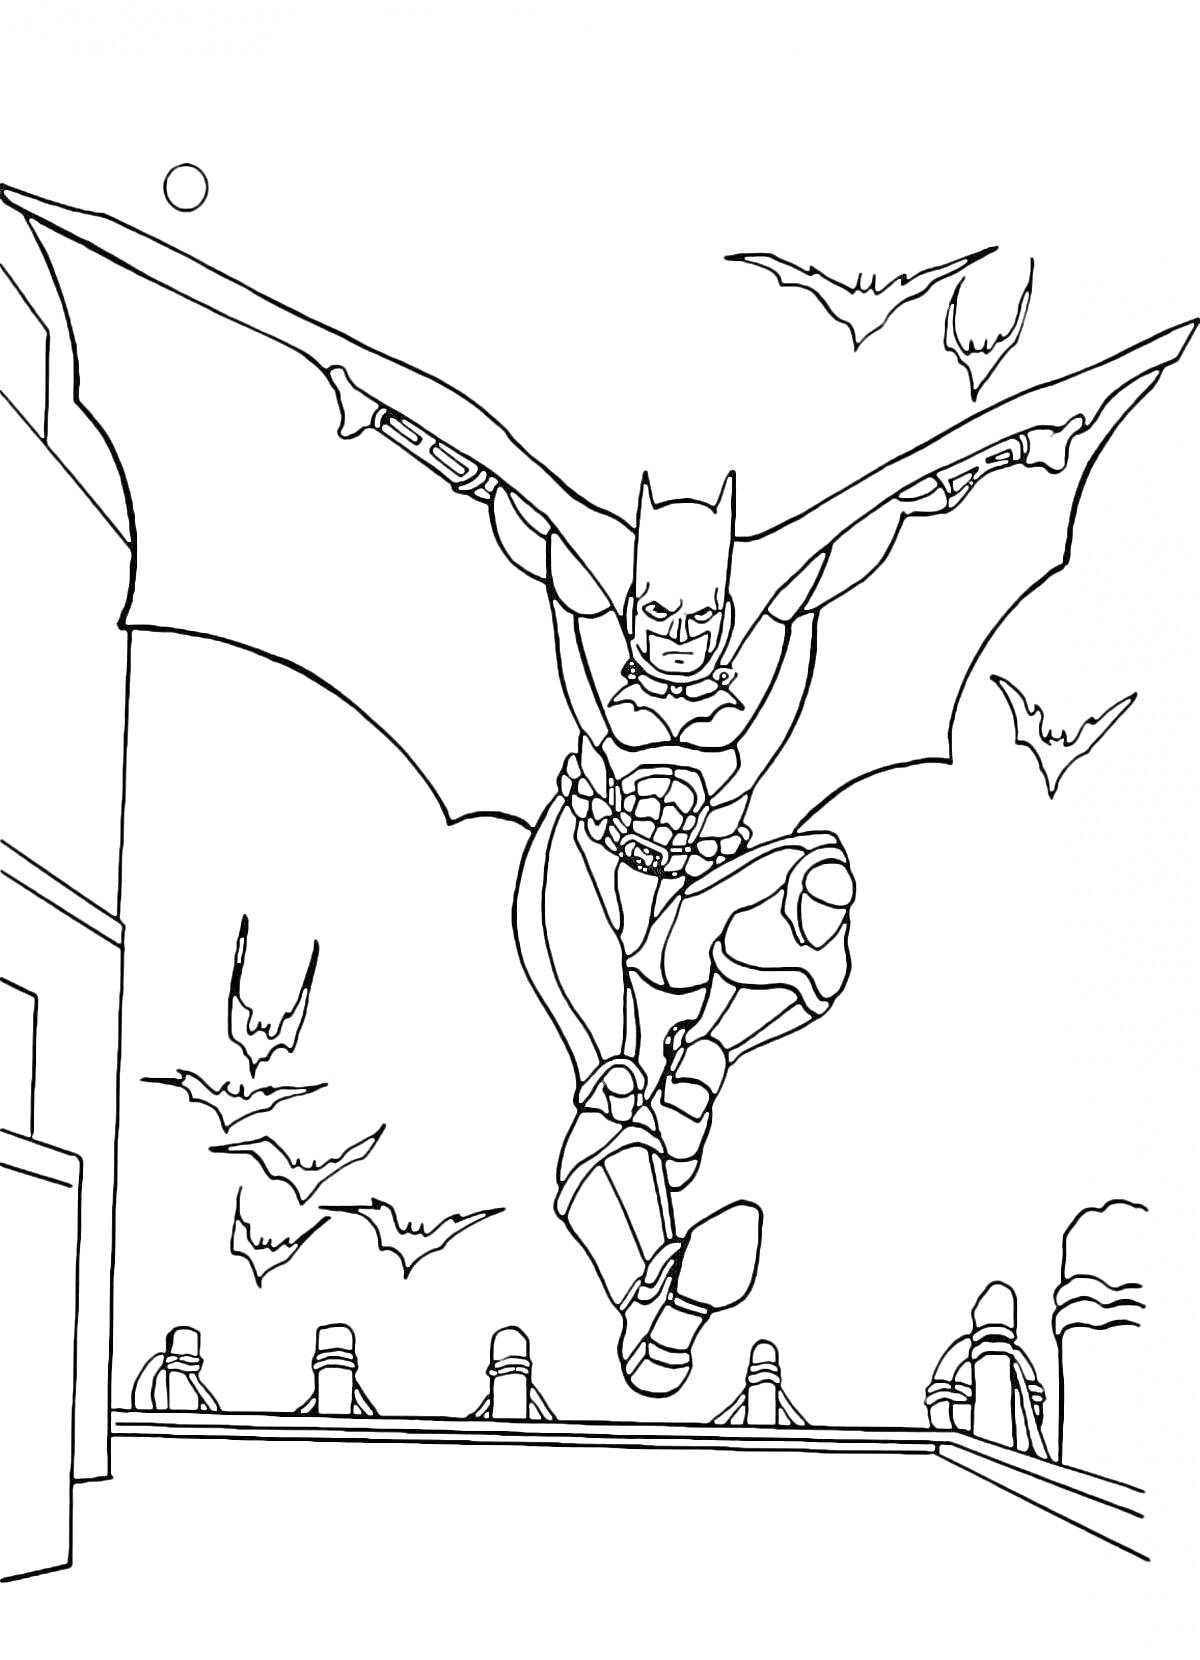 Раскраска Бэтмен на крыше здания с летучими мышами на фоне ночного города